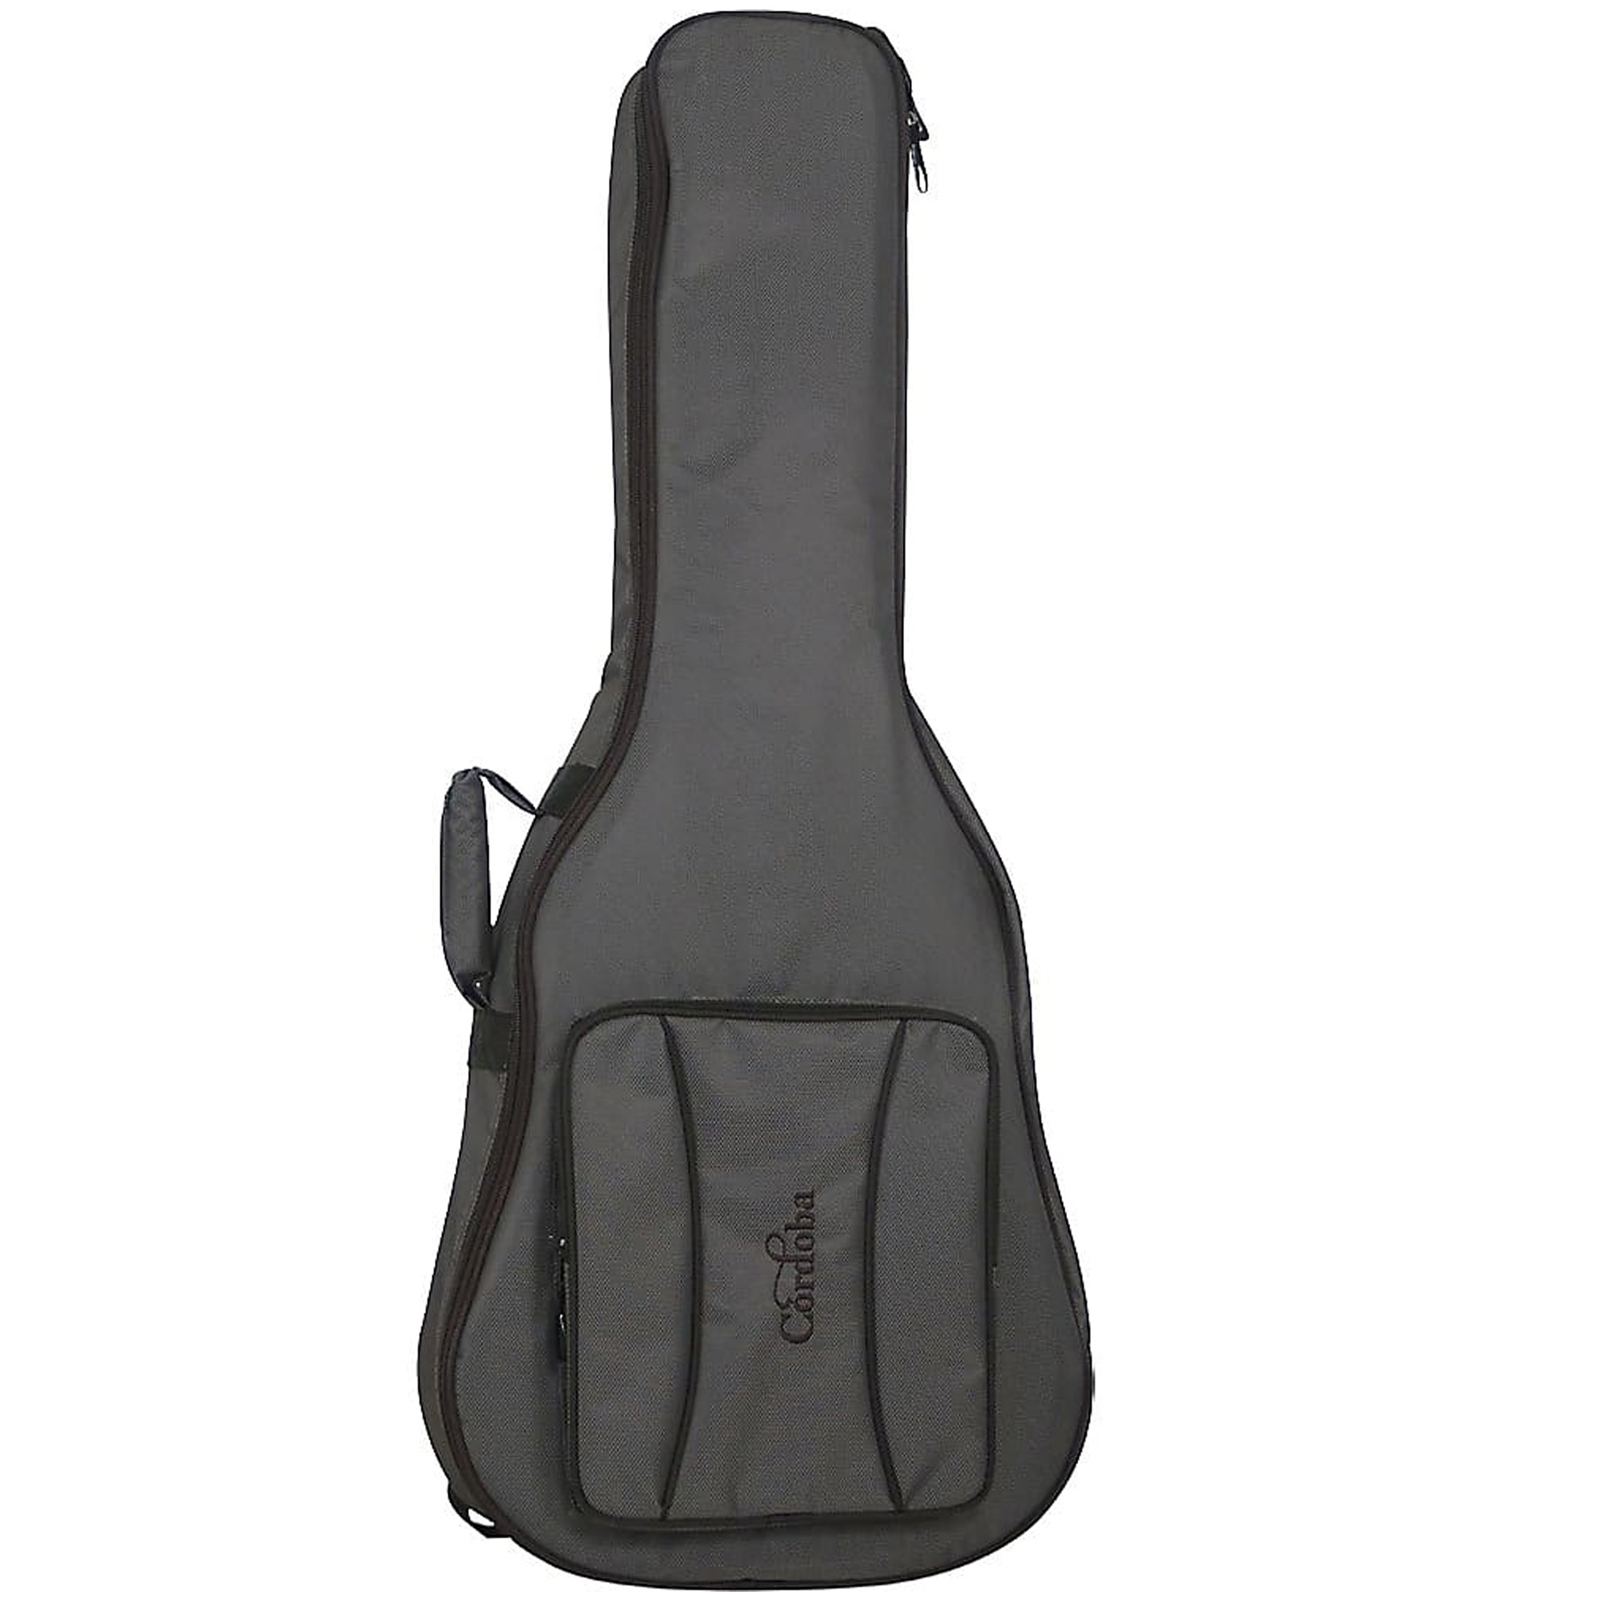 Cordoba 100GB Full-Size Classical Guitar Gig Bag